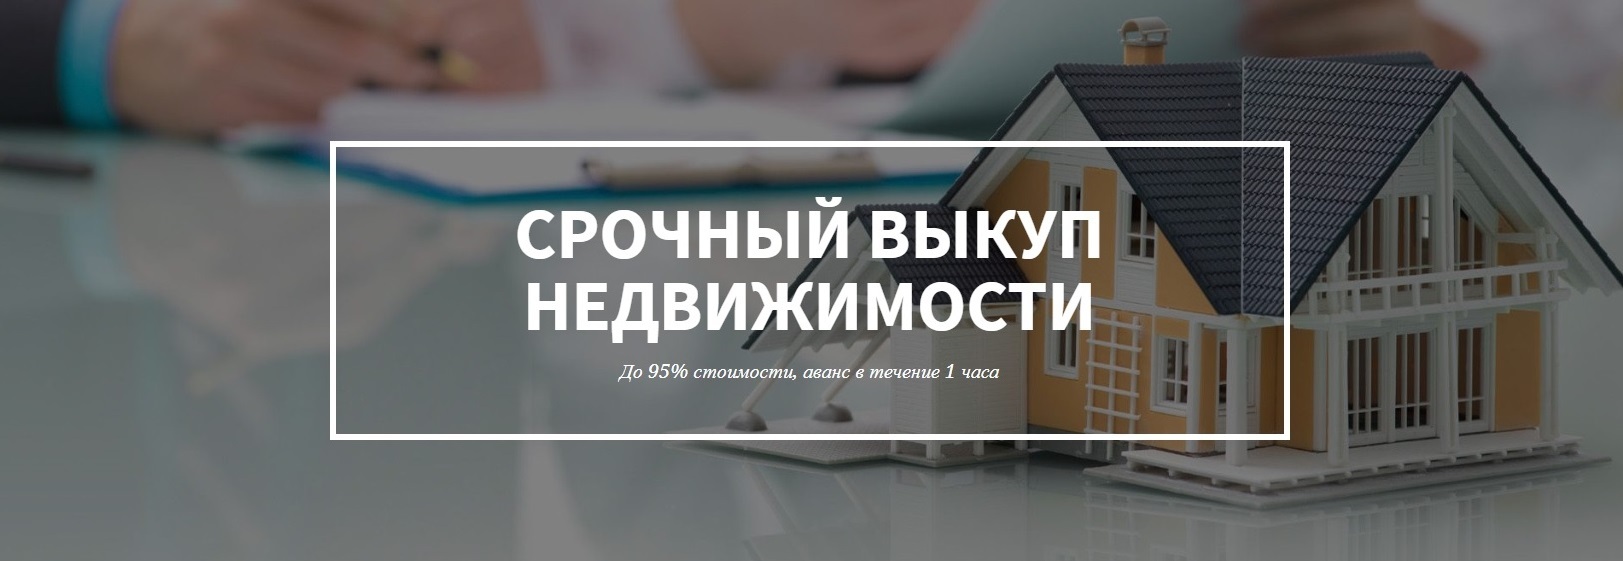 дизайн картинка выкупа недвижимости в Иркутске